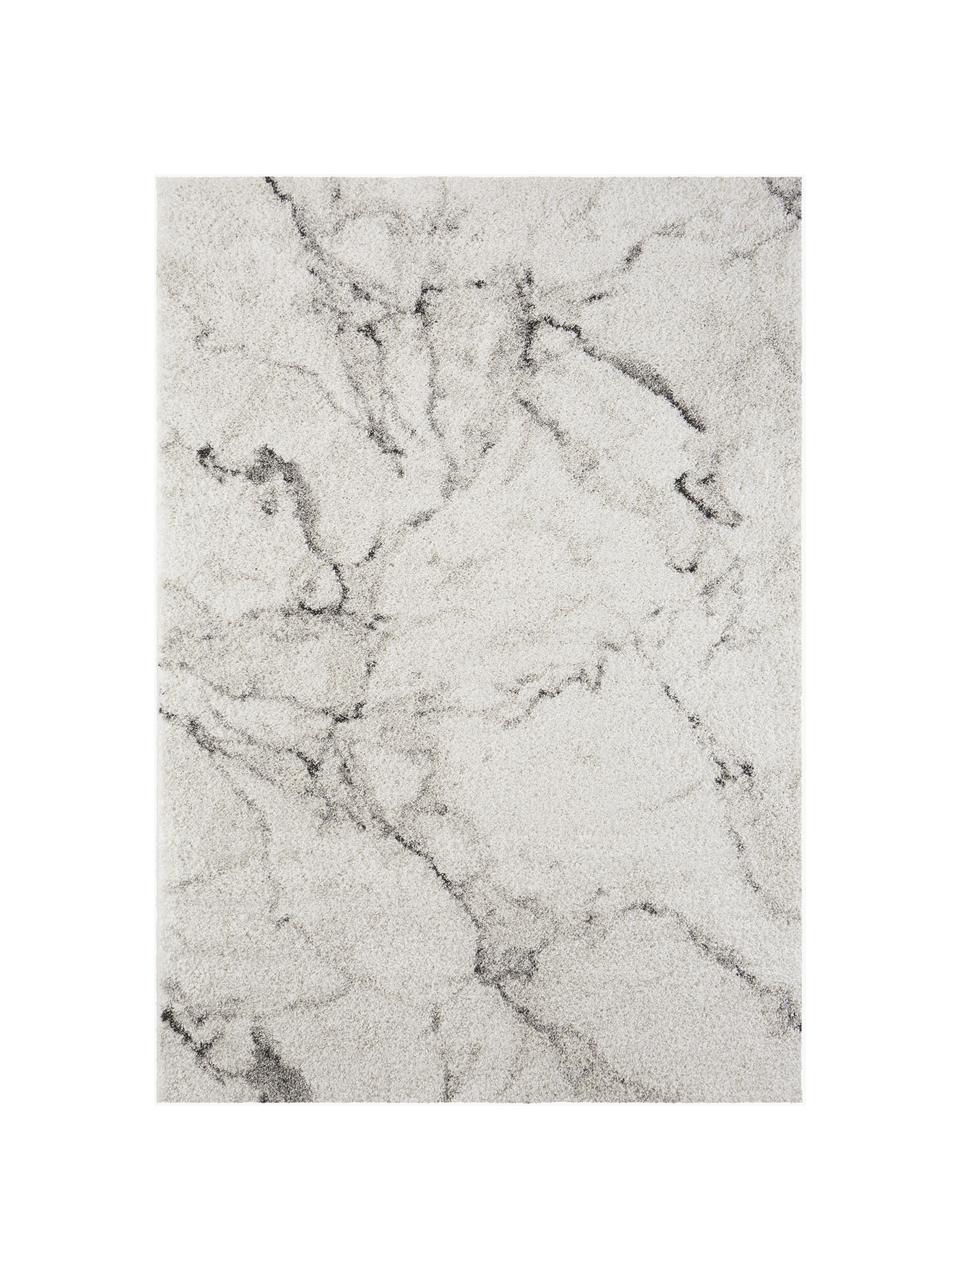 Flauschiger Hochflor-Teppich Mayrin mit marmoriertem Muster, Flor: 100% Polypropylen, Grautöne, B 120 x L 170 cm (Größe S)